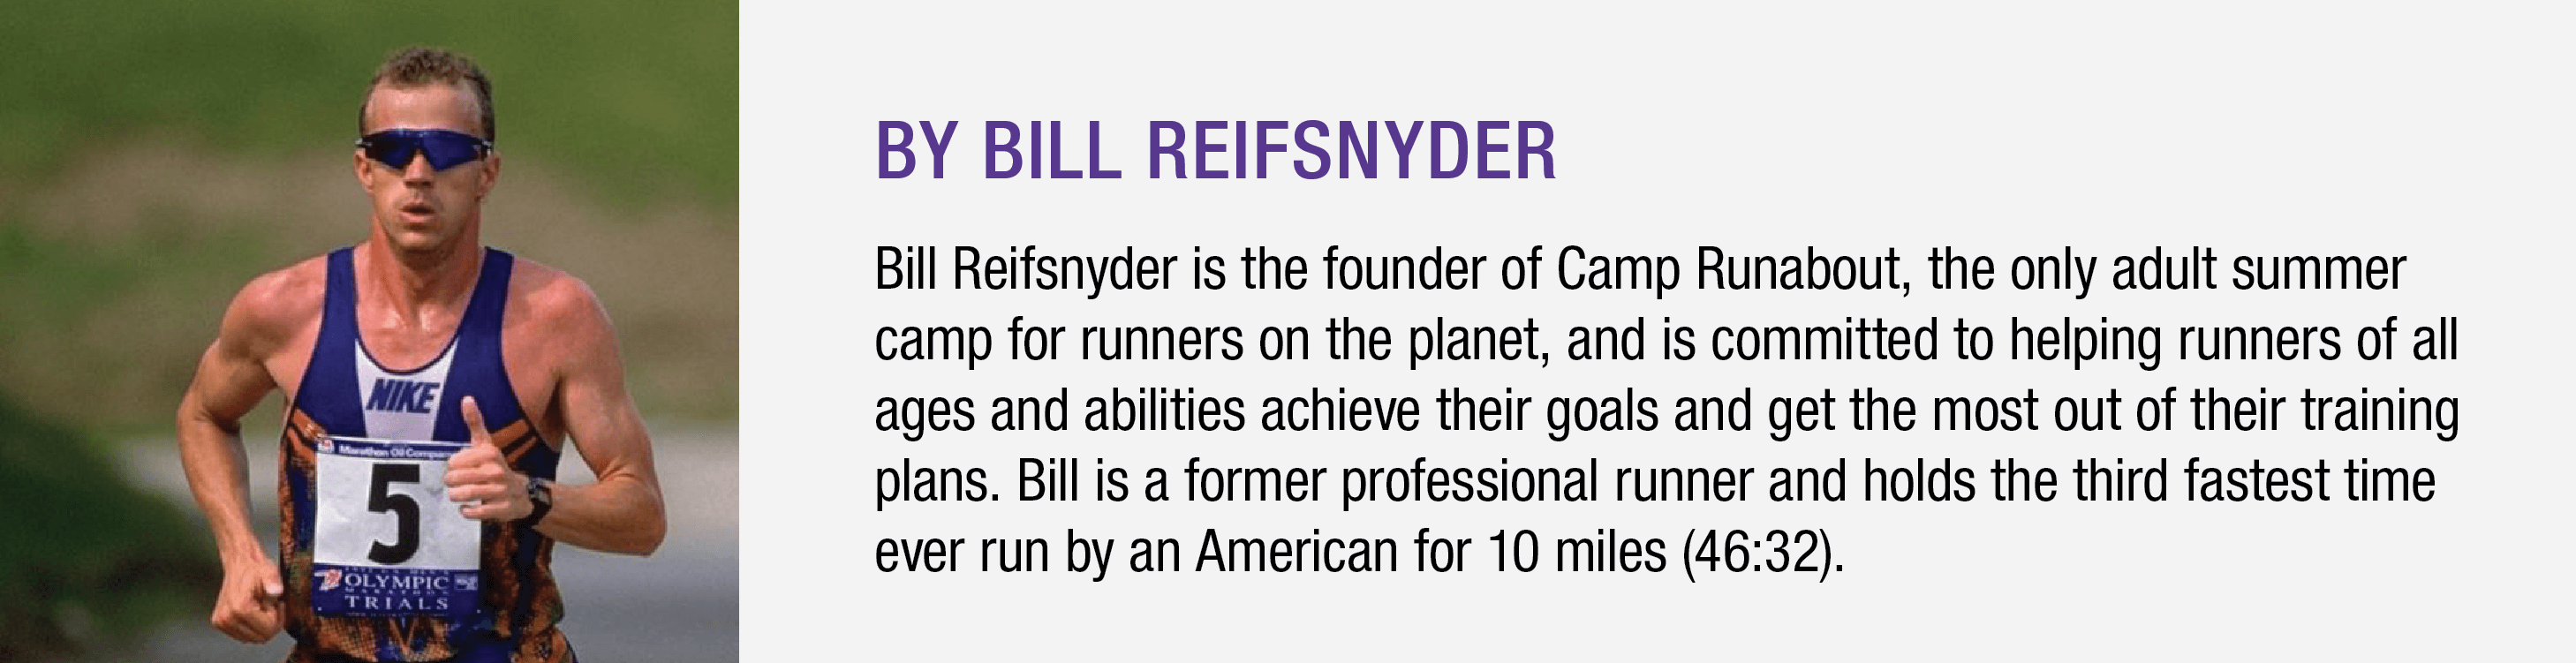 Bill Reifsnyder Bio